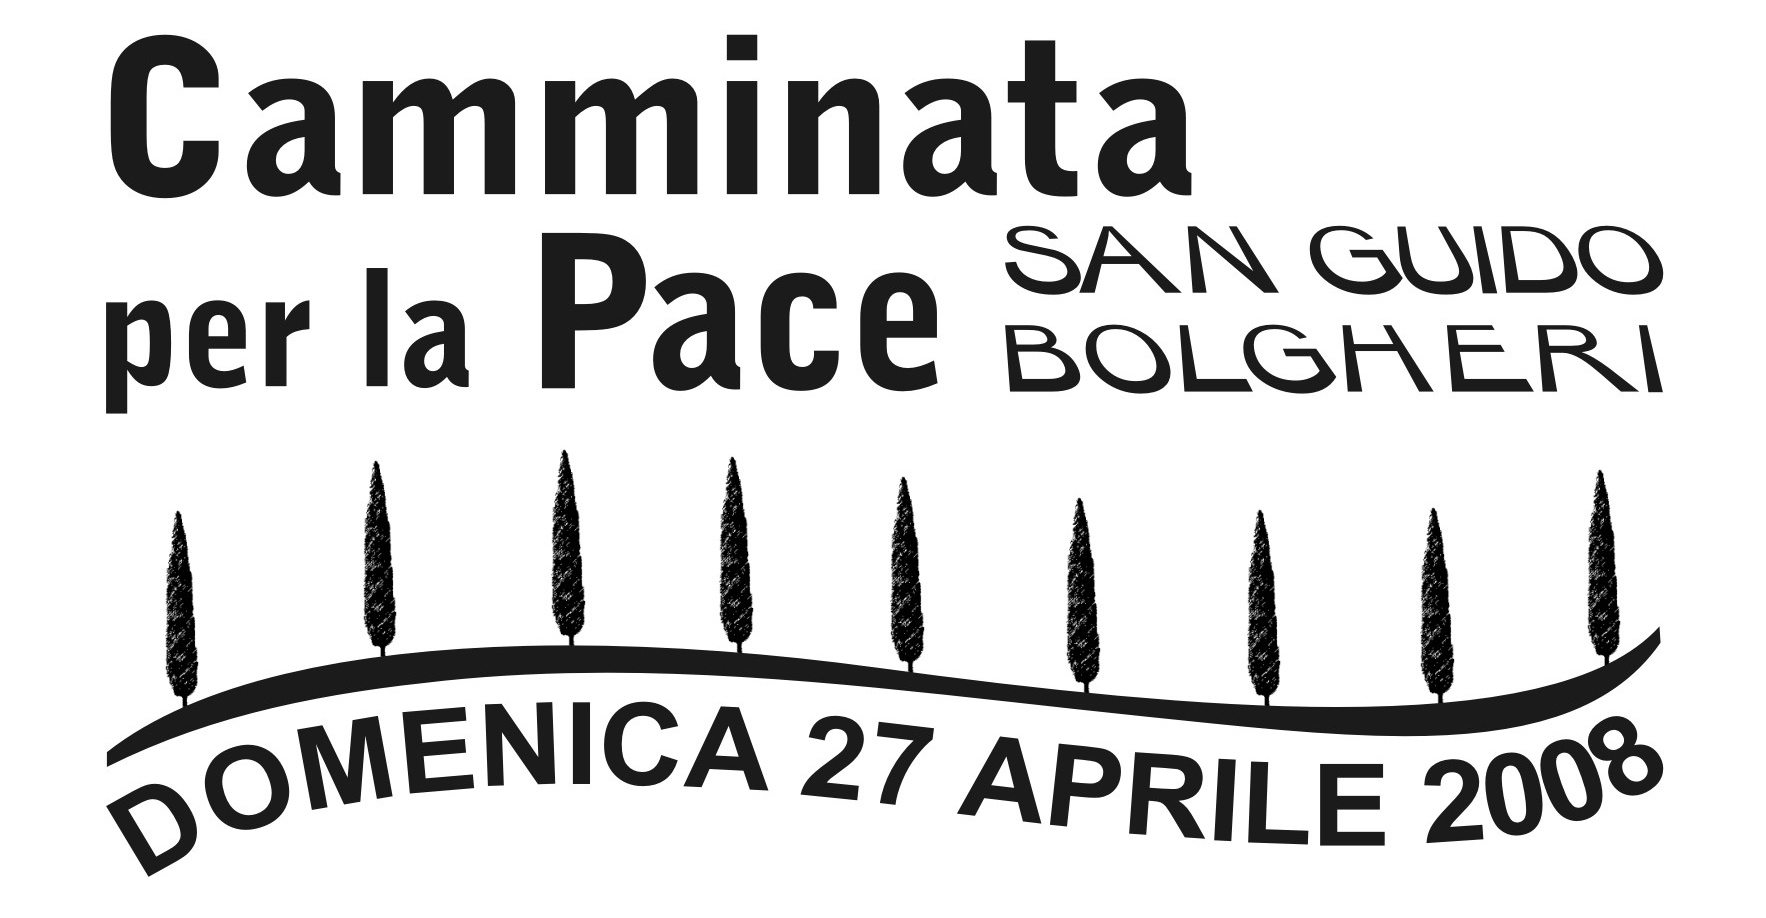 27 Aprile: Camminata per la Pace San Guido – Bolgheri